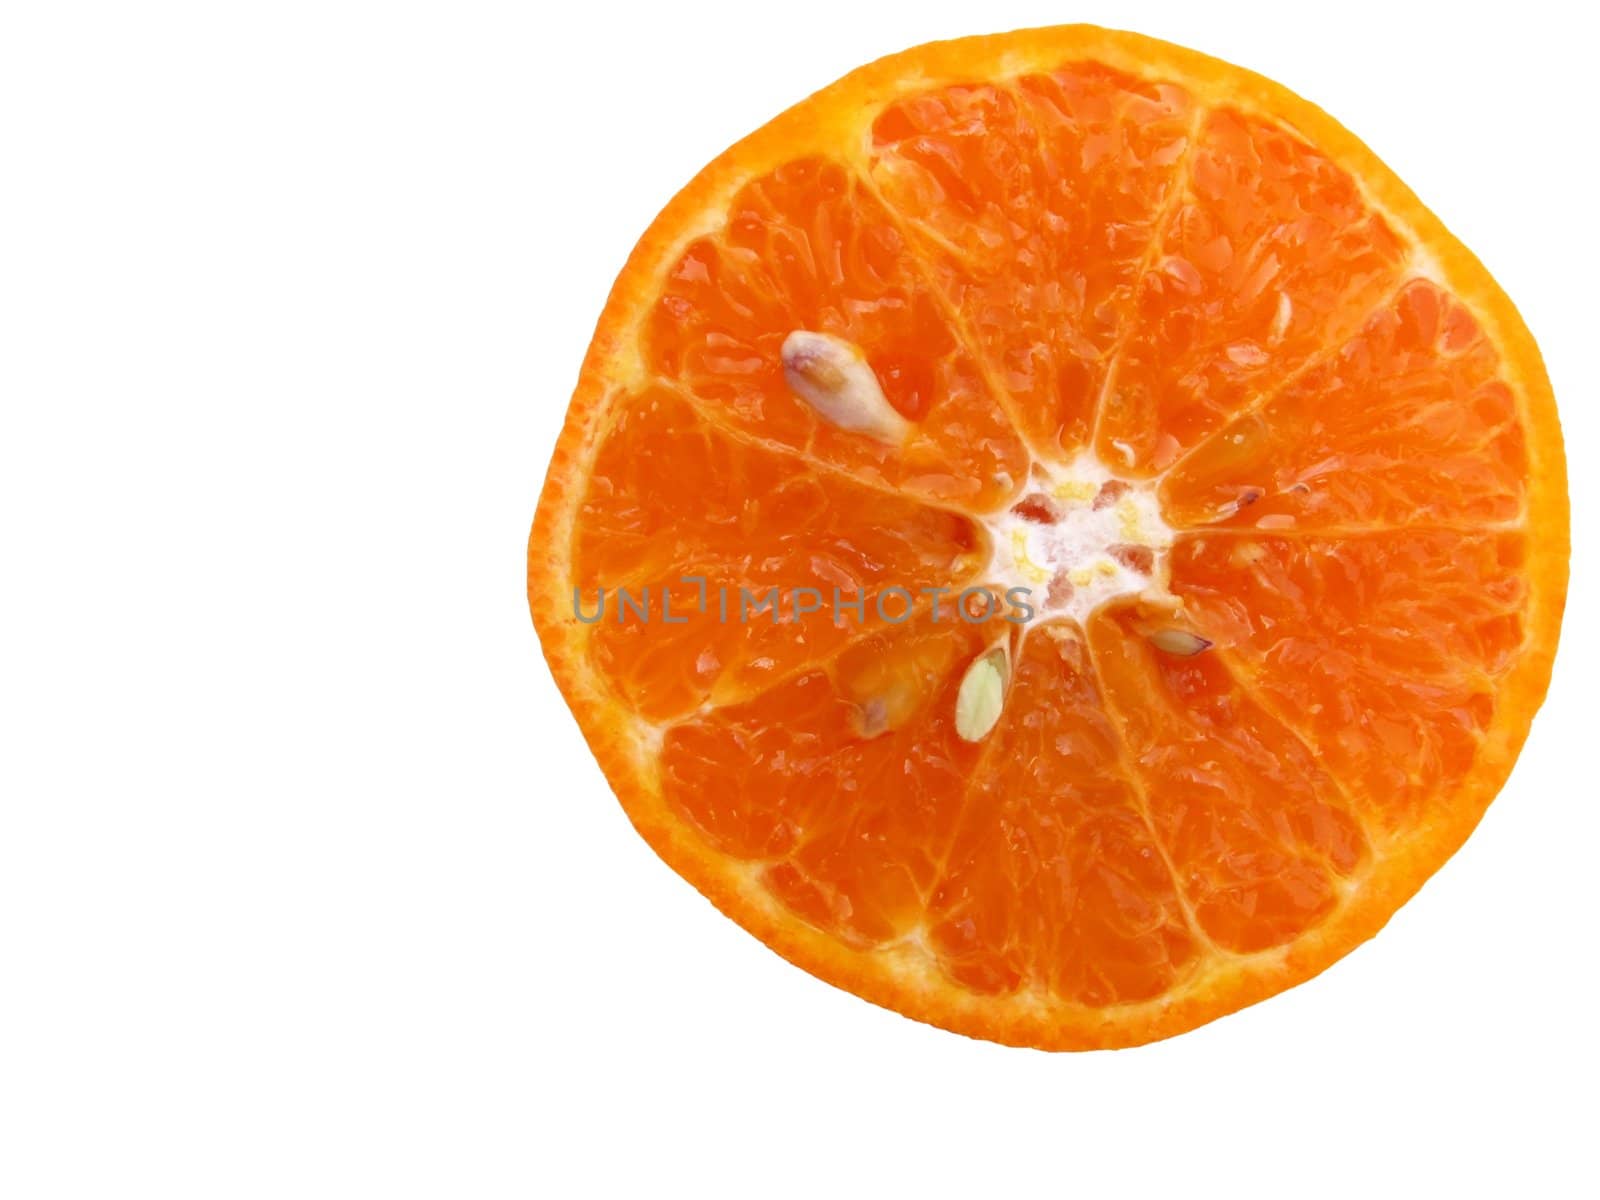 Half sliced juicy orange by lkant